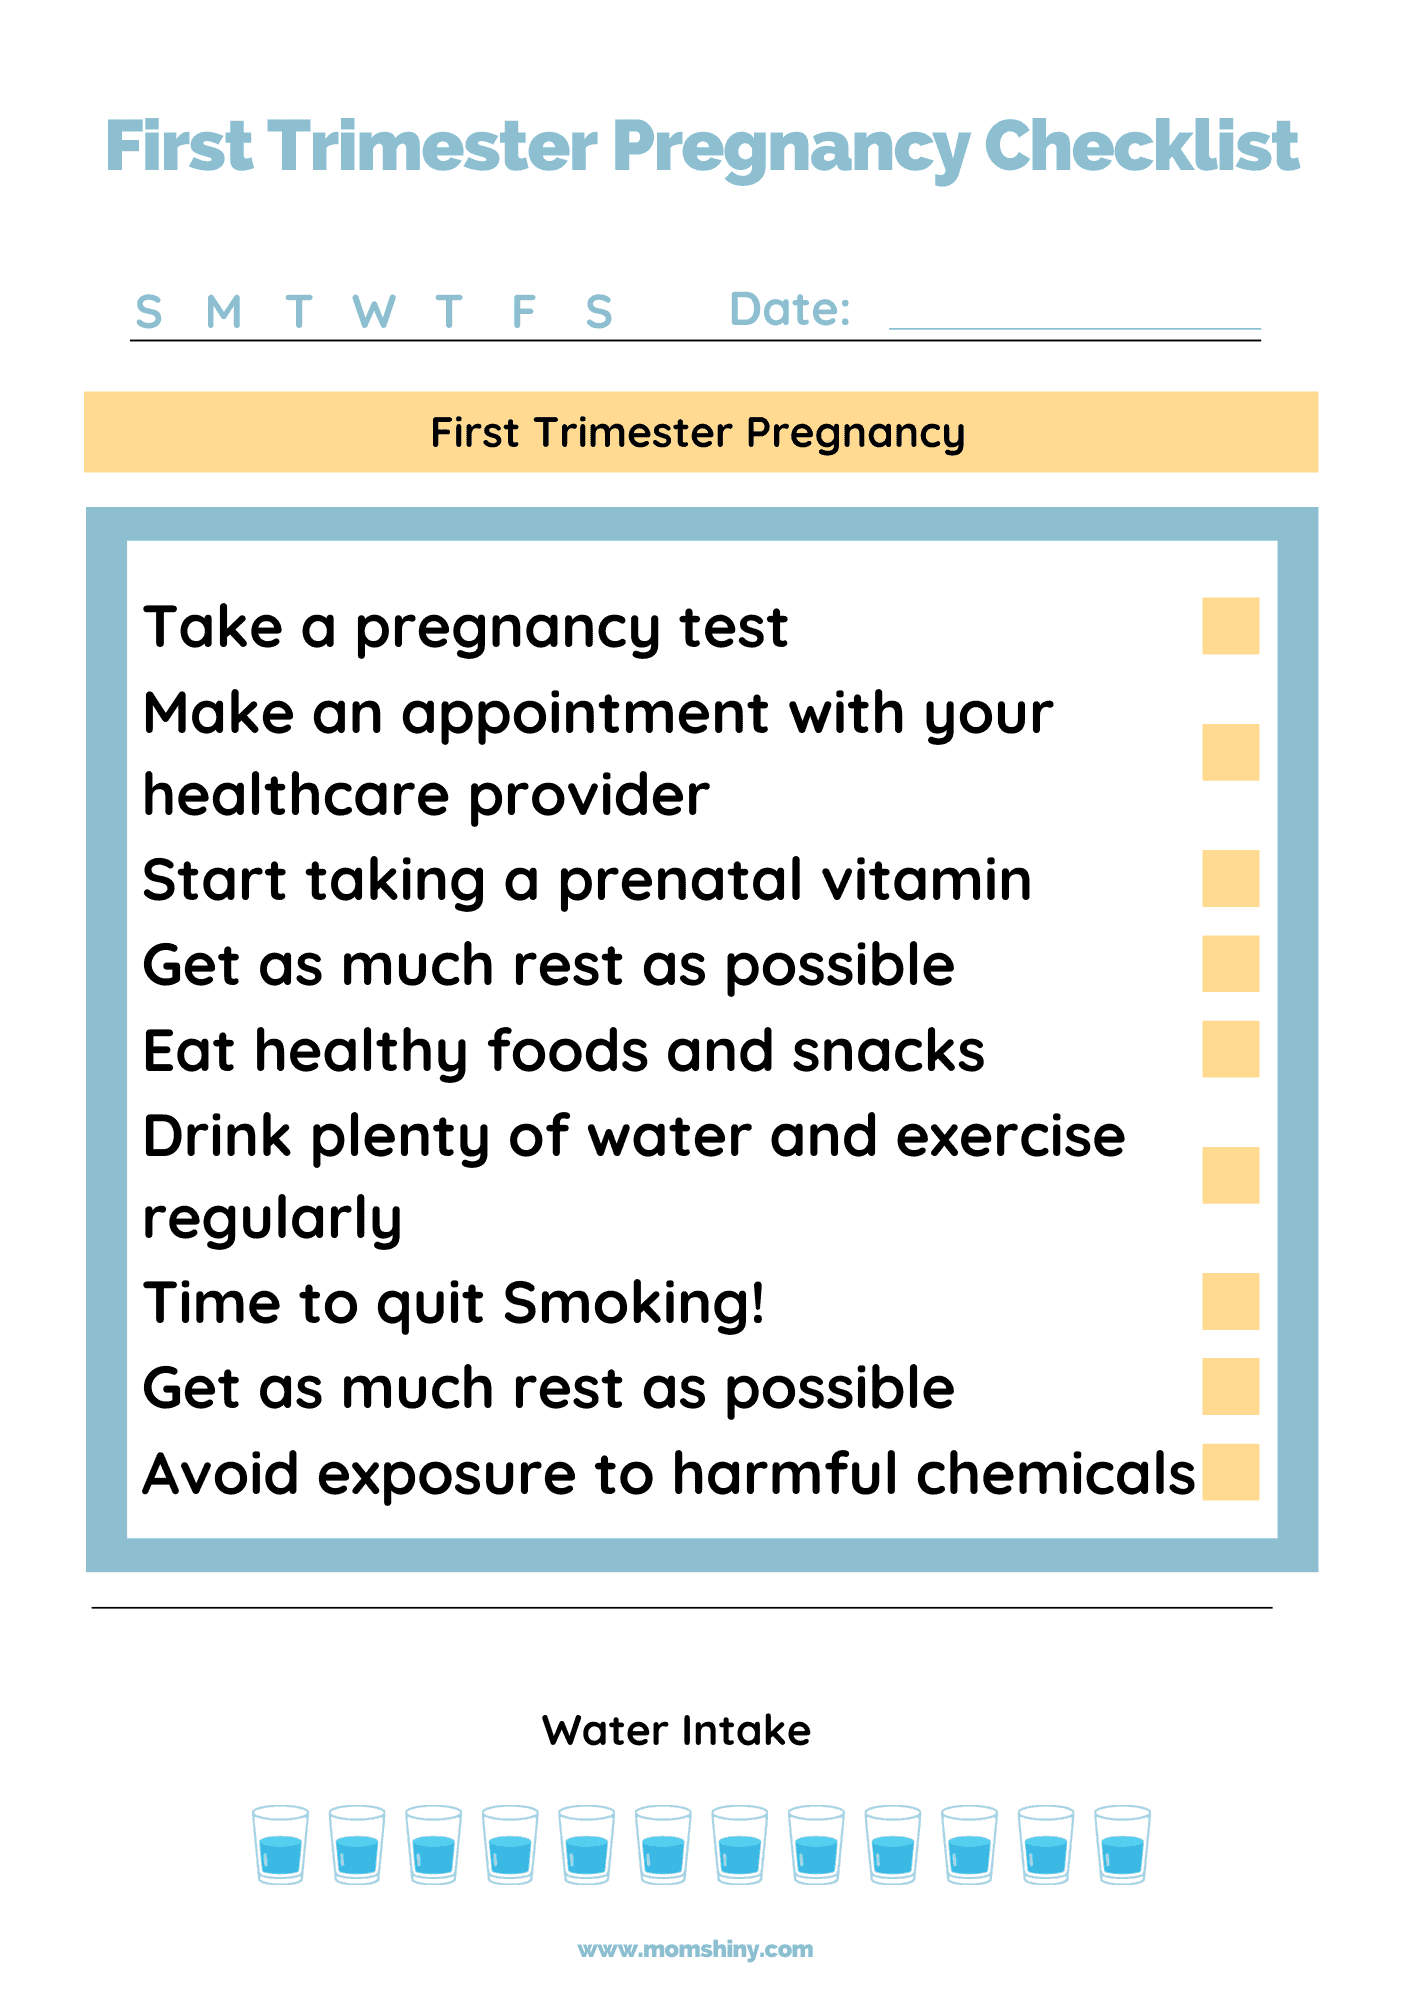 First Trimester Pregnancy Checklist